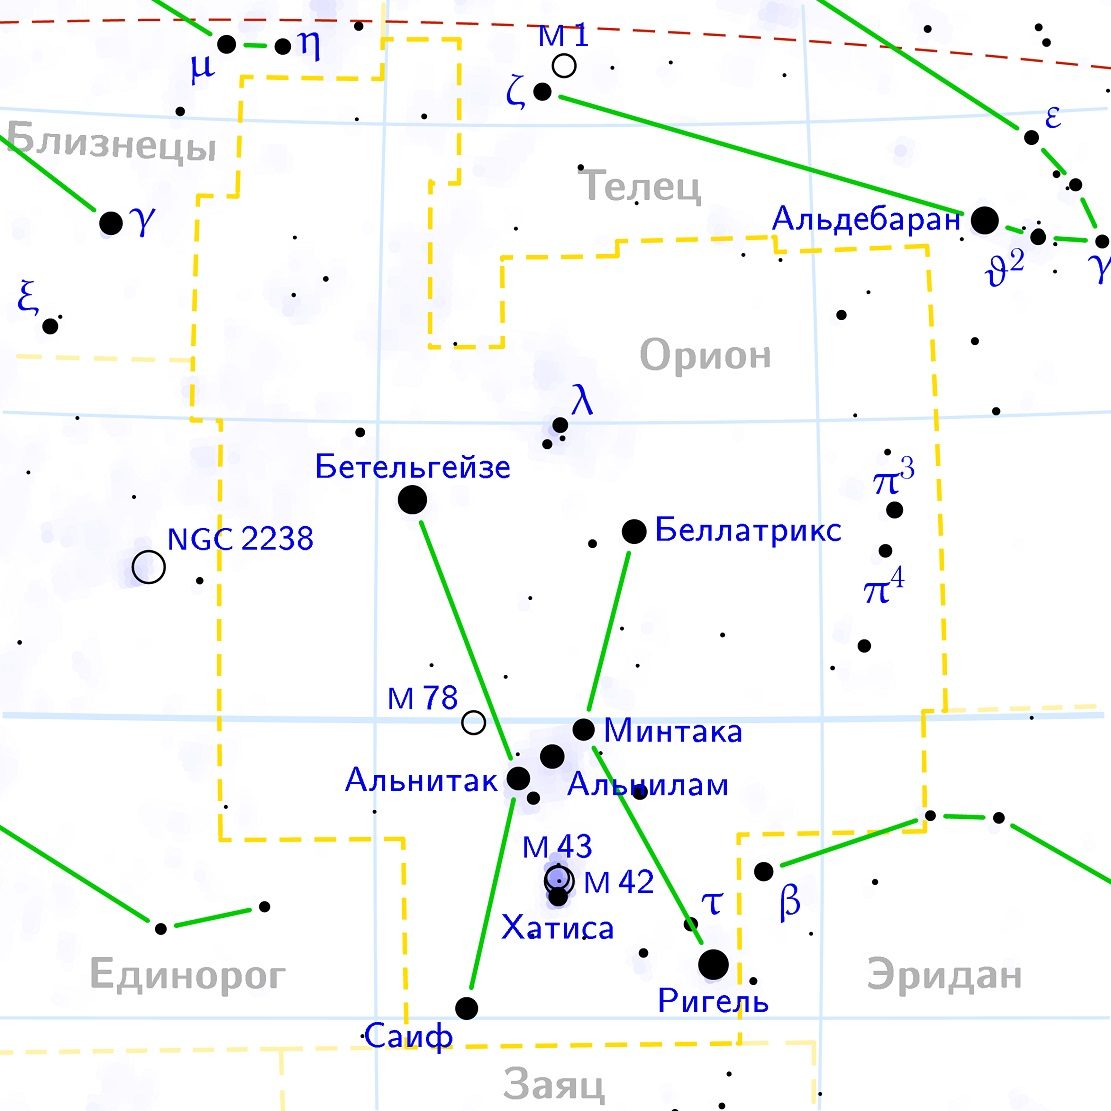 Position de la nébuleuse M43 dans la constellation d'Orion